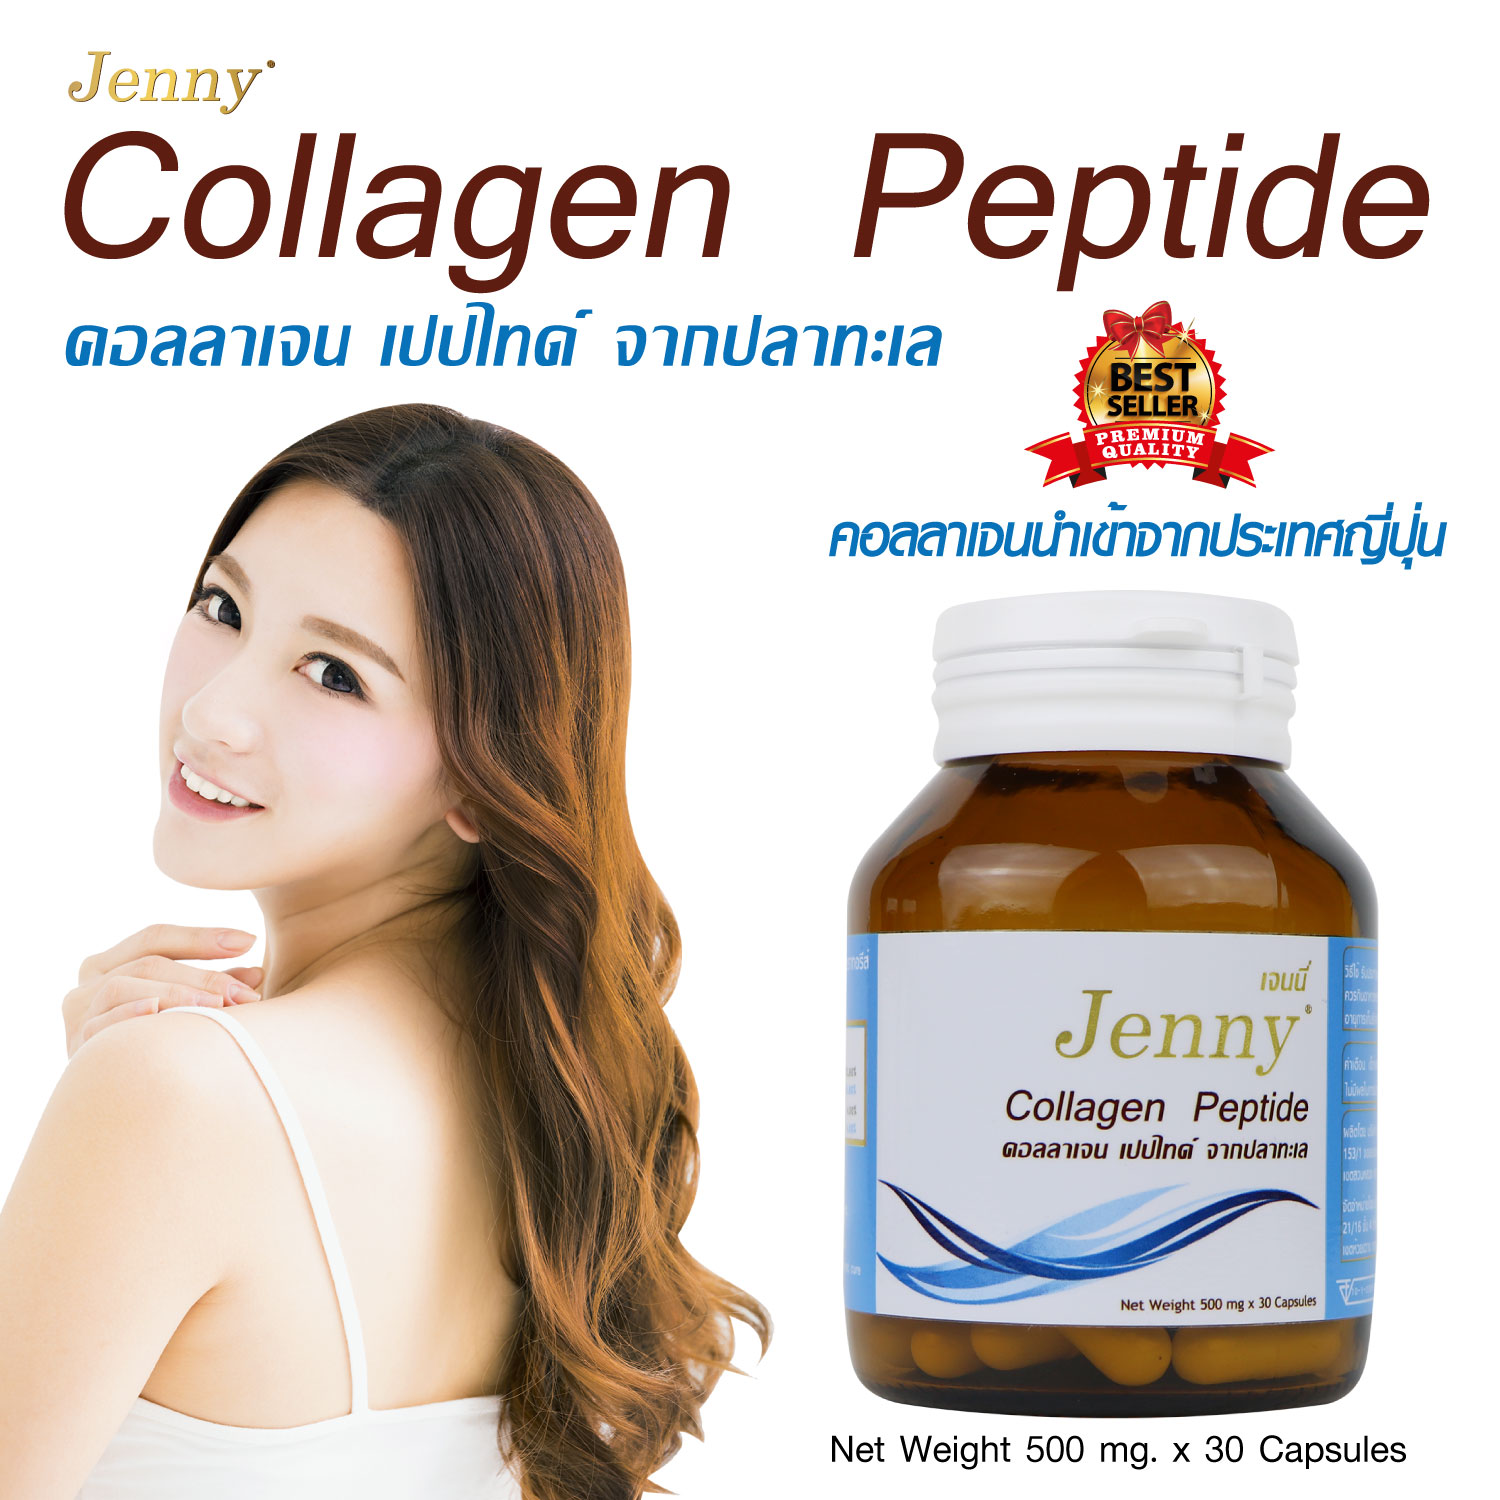 คอลลาเจน พลัส วิตามินซี คอลลาเจนญี่ปุ่น x 1 ขวด Marine Collagen Peptide Plus Vitamin C Jenny บำรุงผิว ผิวใส ผิวเนียนใส ช่วยฟื้นฟูผิว คอลลาเจนแท้ จากปลาทะเล